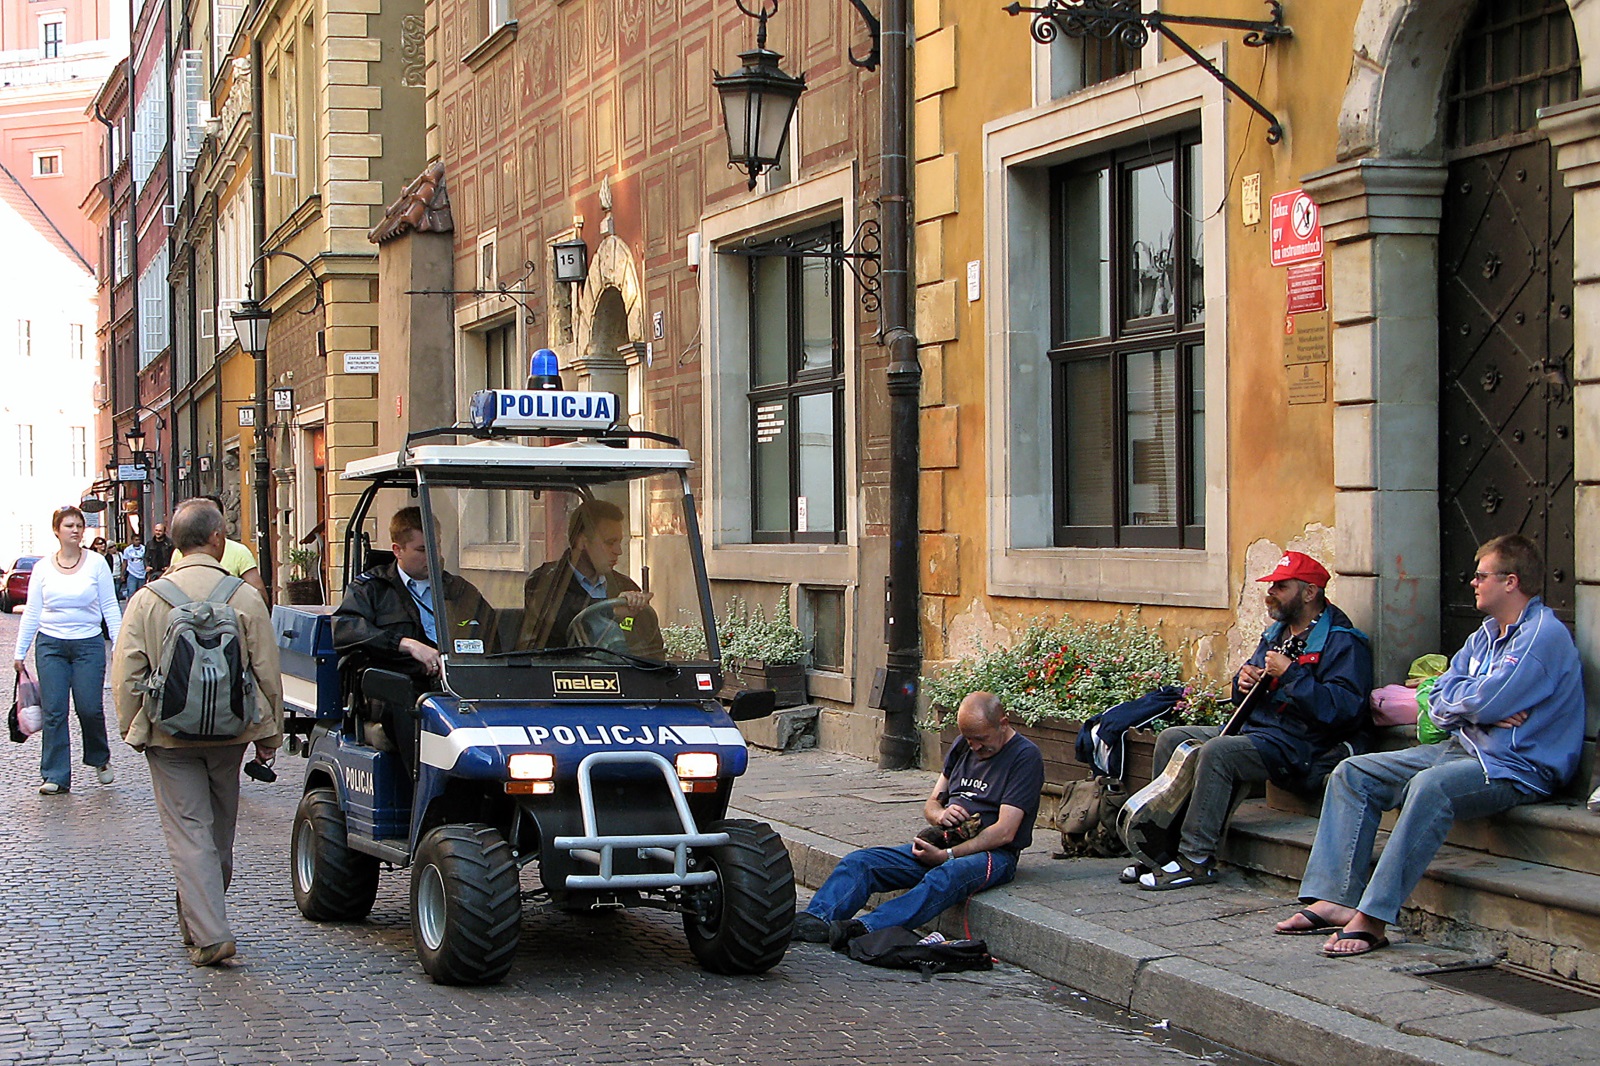 <p>С тази кола патрулира полицията по уличките в старата част на Варшава, Полша.</p>